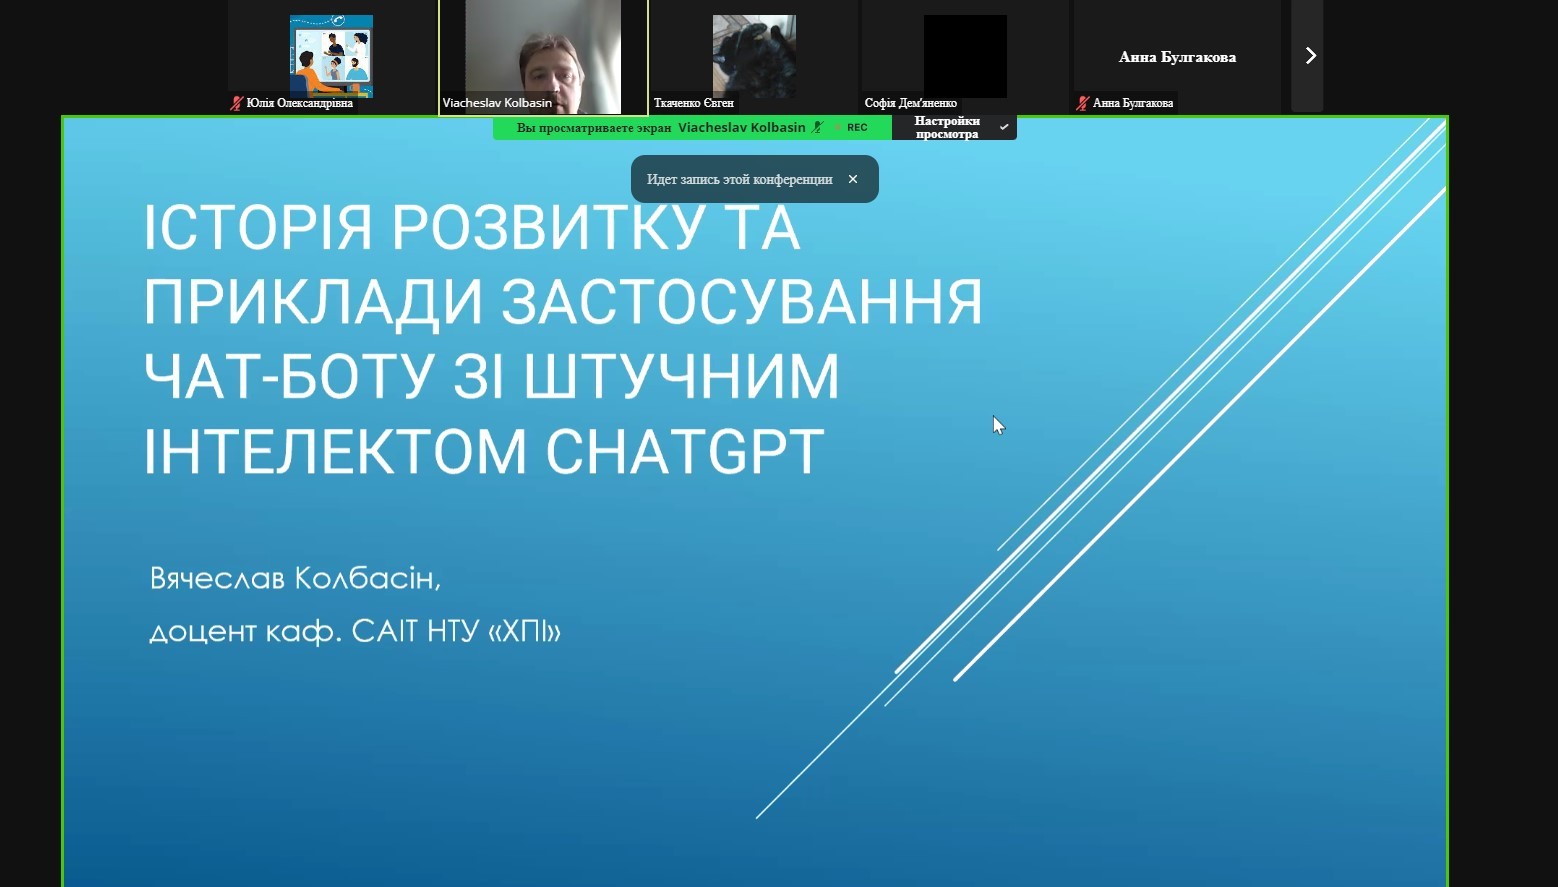 Знайомство учнів Харківського ліцею № 73 з можливостями ChatGPT